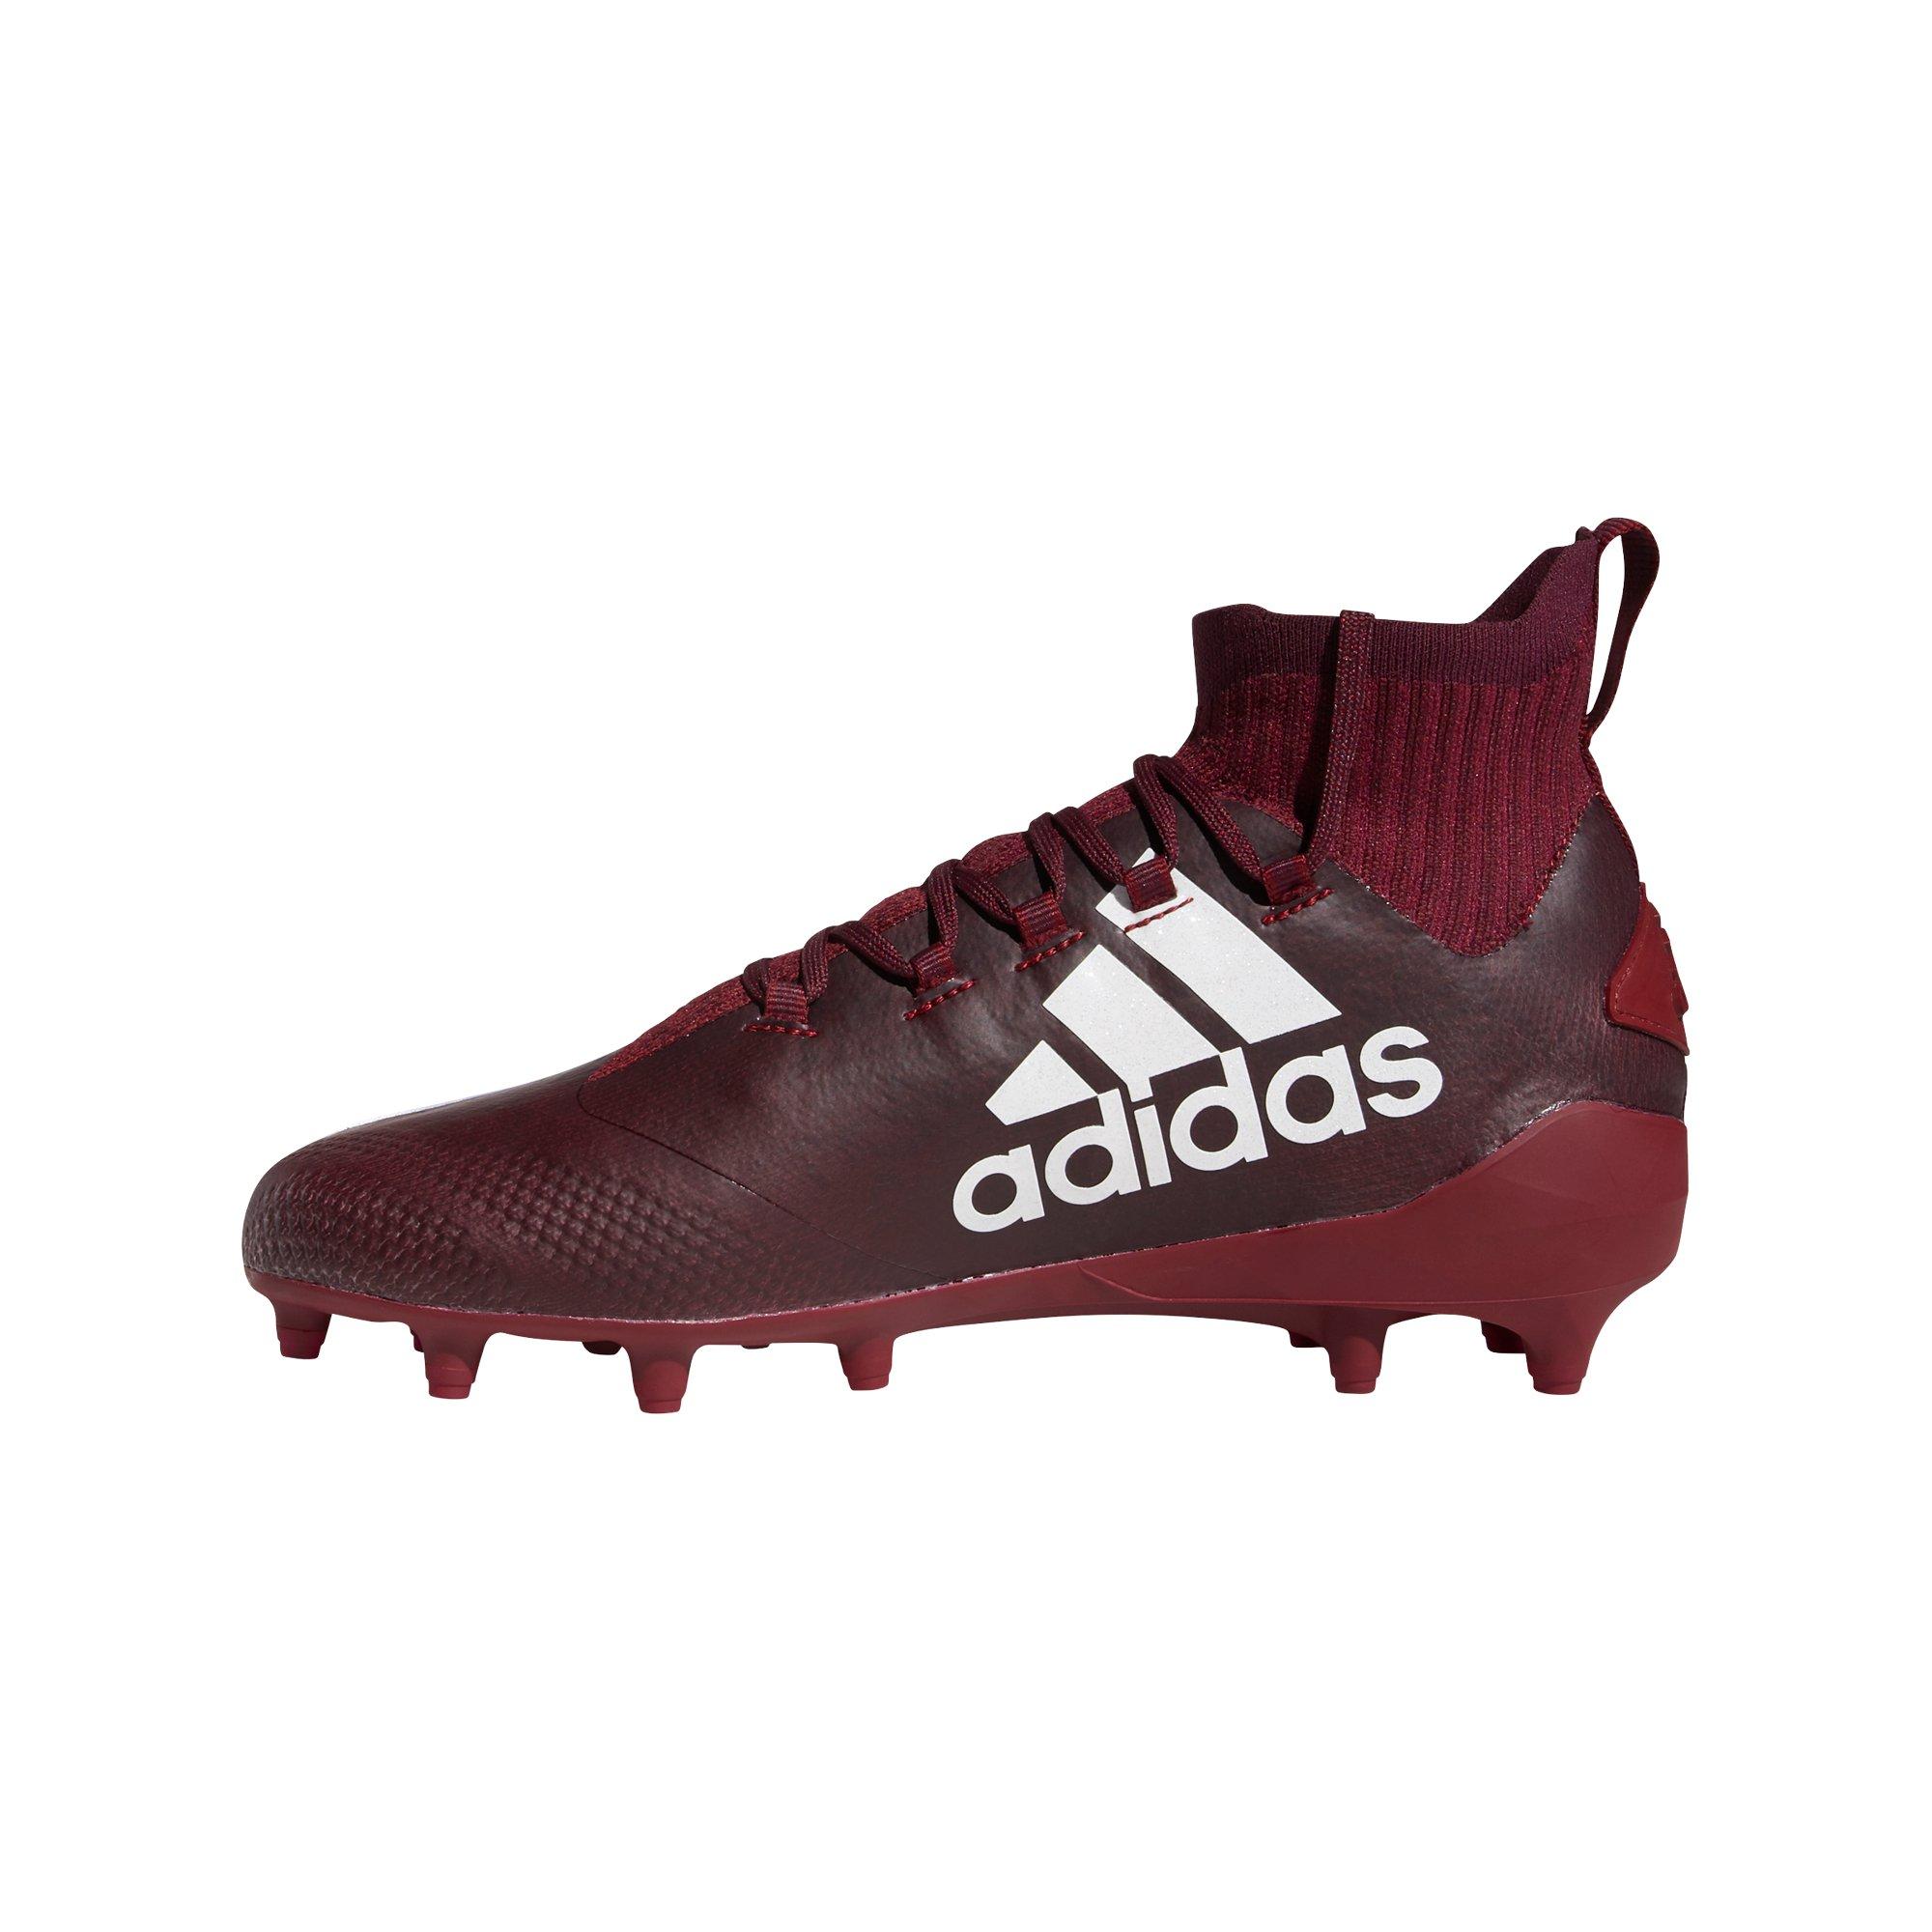 adidas football cleats maroon